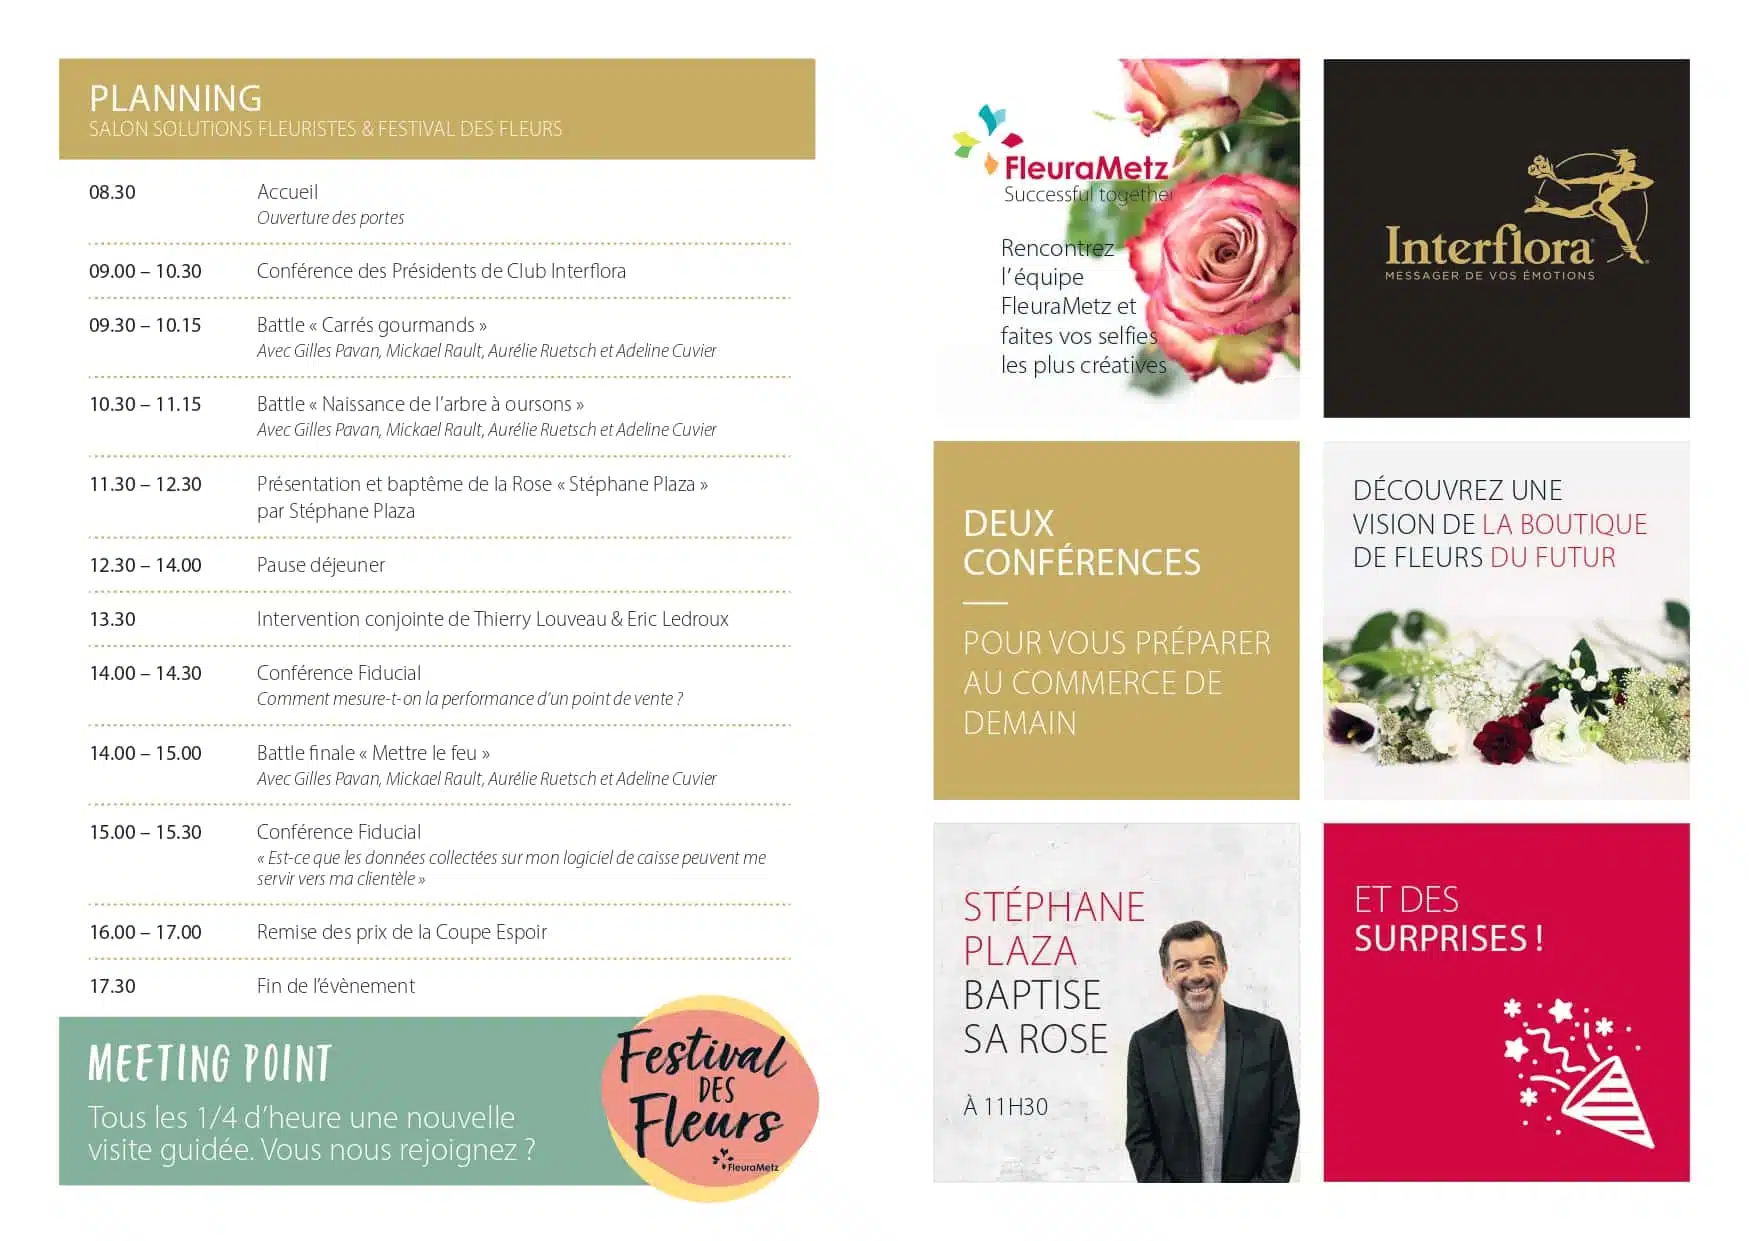 Tout sur le Salon Solutions Fleuristes - FleuraMetz Interflora - 20 janvier 2020 - Bourget Paris